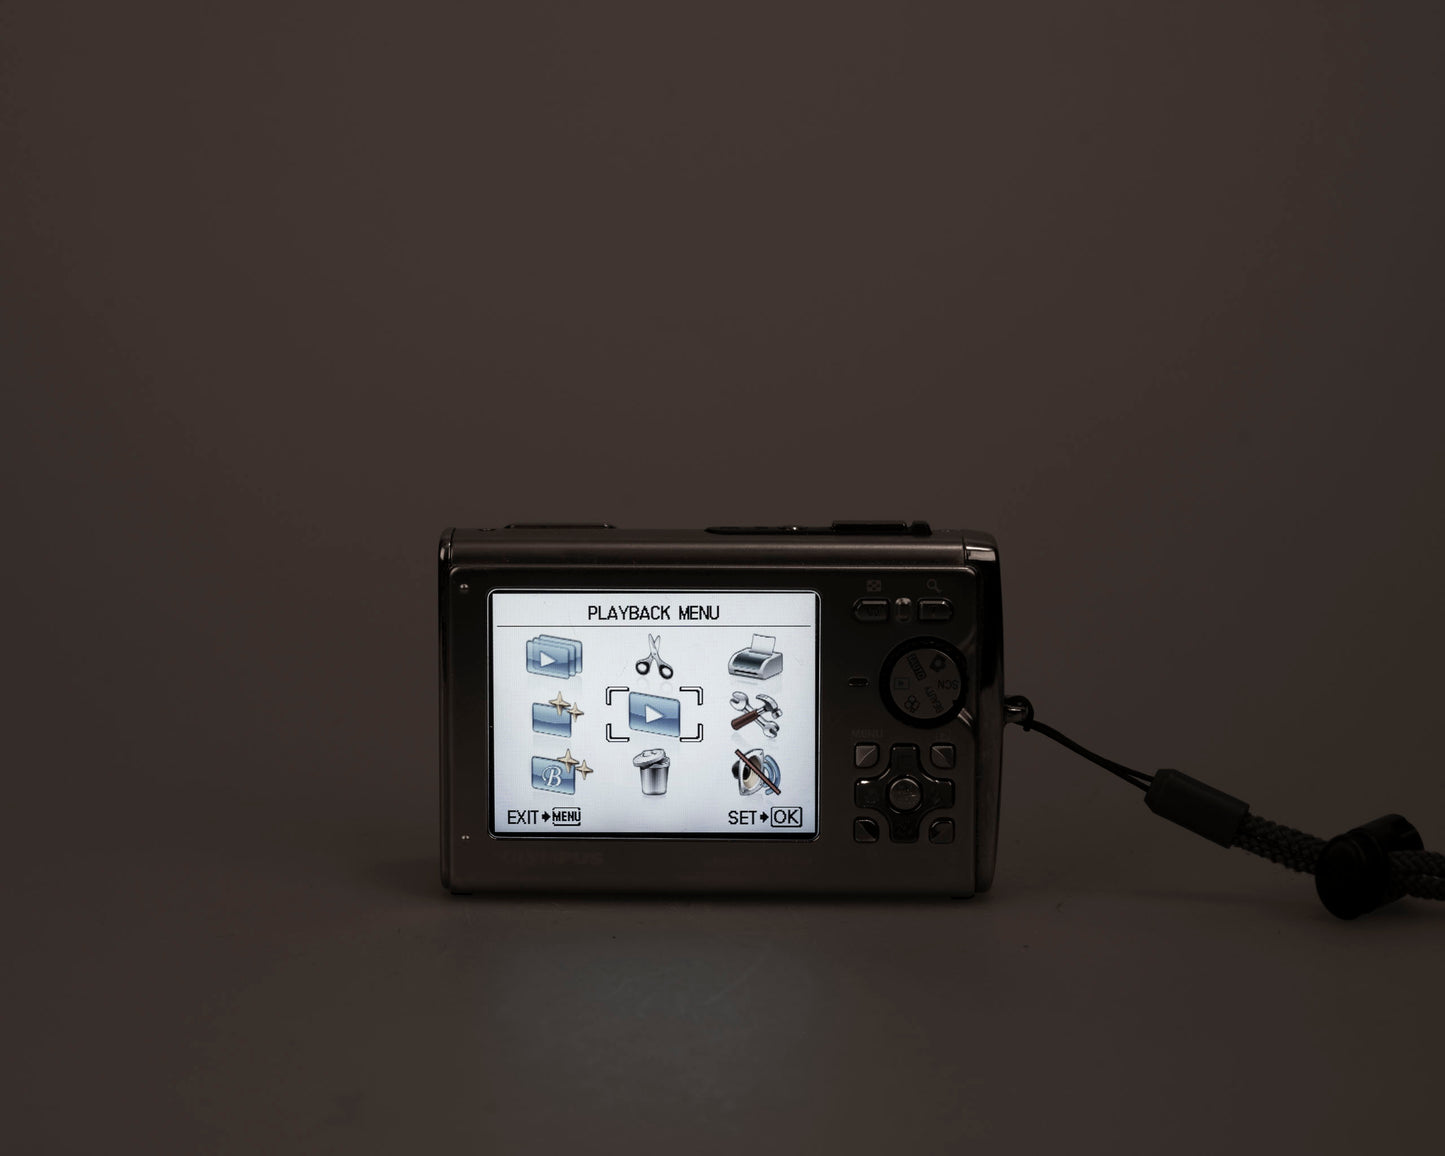 Appareil photo numérique robuste avec capteur CCD 12 MP Olympus Stylus Tough-8000 avec chargeur + batterie + carte XD de 1 Go